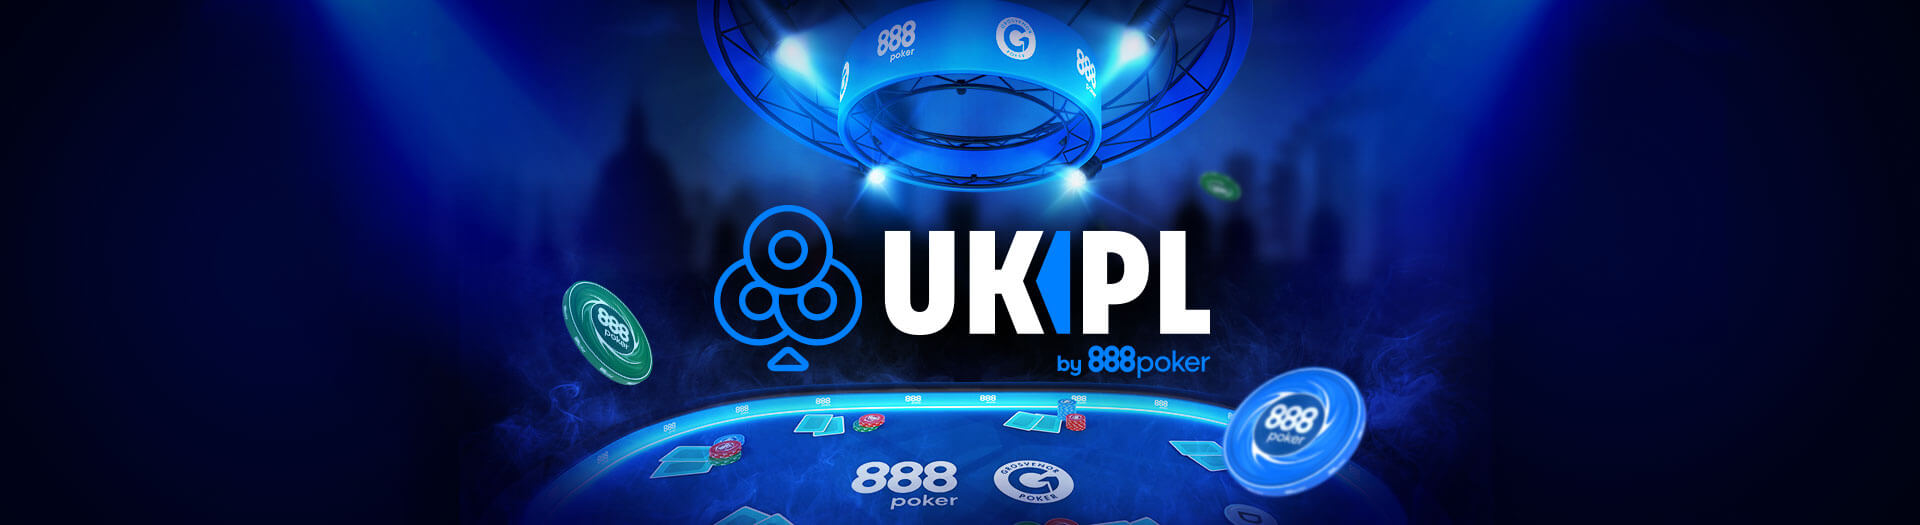 888poker’s UK Poker League